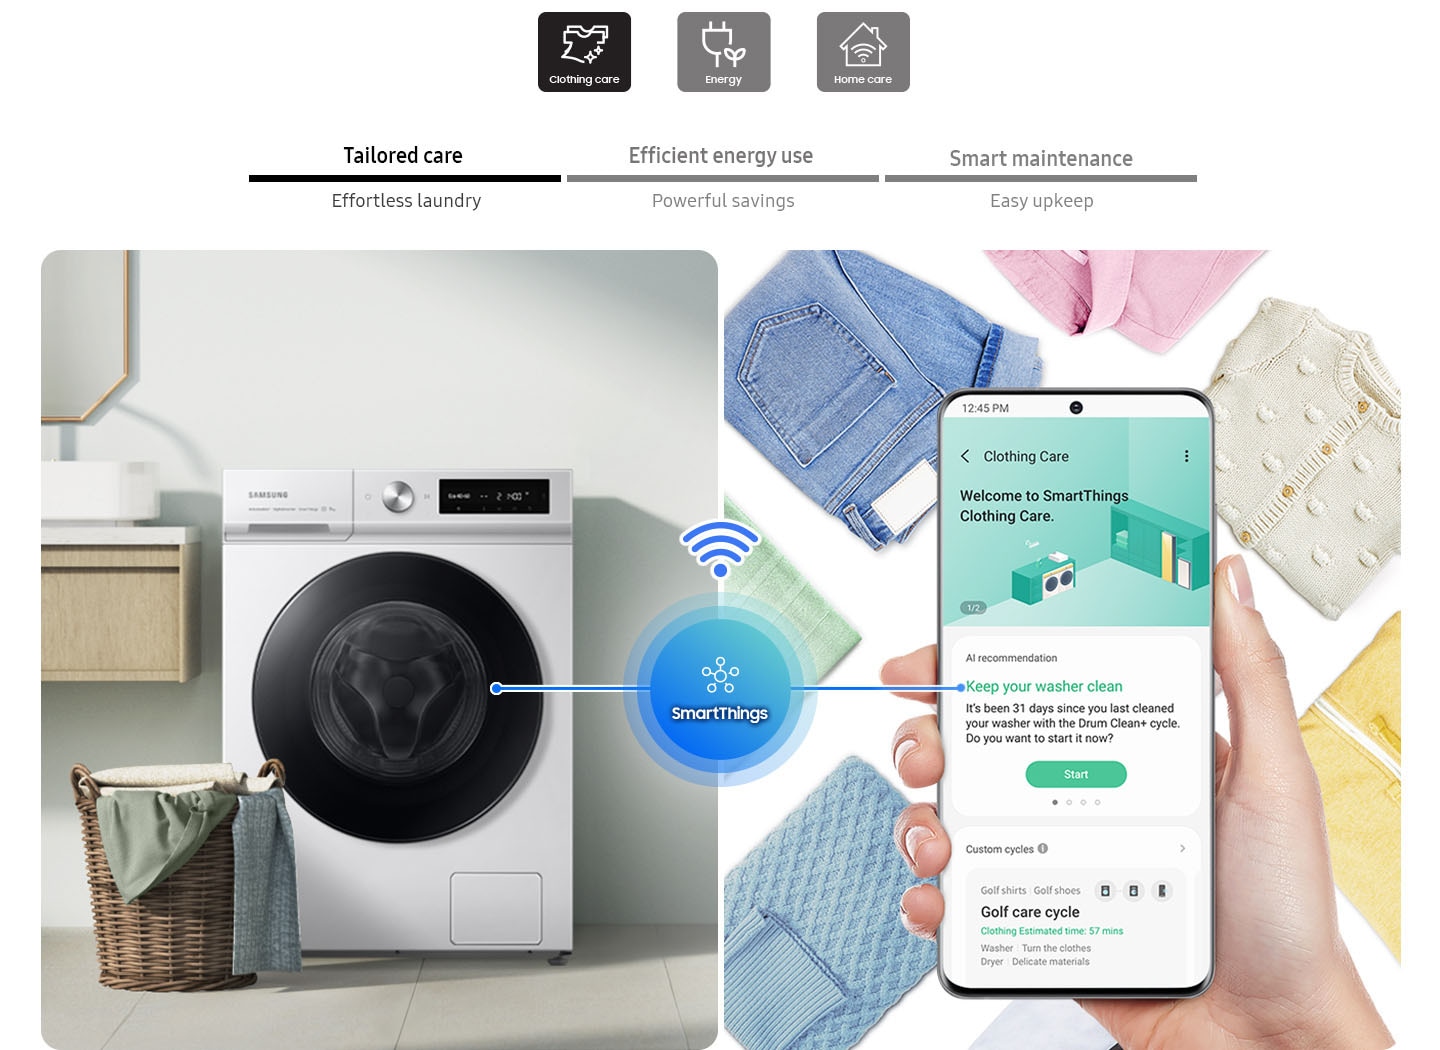 Aplikacija SmartThings pomaga pri negi po meri, učinkoviti rabi energije, pametnem vzdrževanju. Clothing Care prikaže priporočila umetne inteligence za enostavno pranje perila, Energy sporoči najboljše cene na podlagi osebne uporabe za velik prihranek, Home Care pomaga pri preprostem vzdrževanju vzdrževanja pralnega stroja.